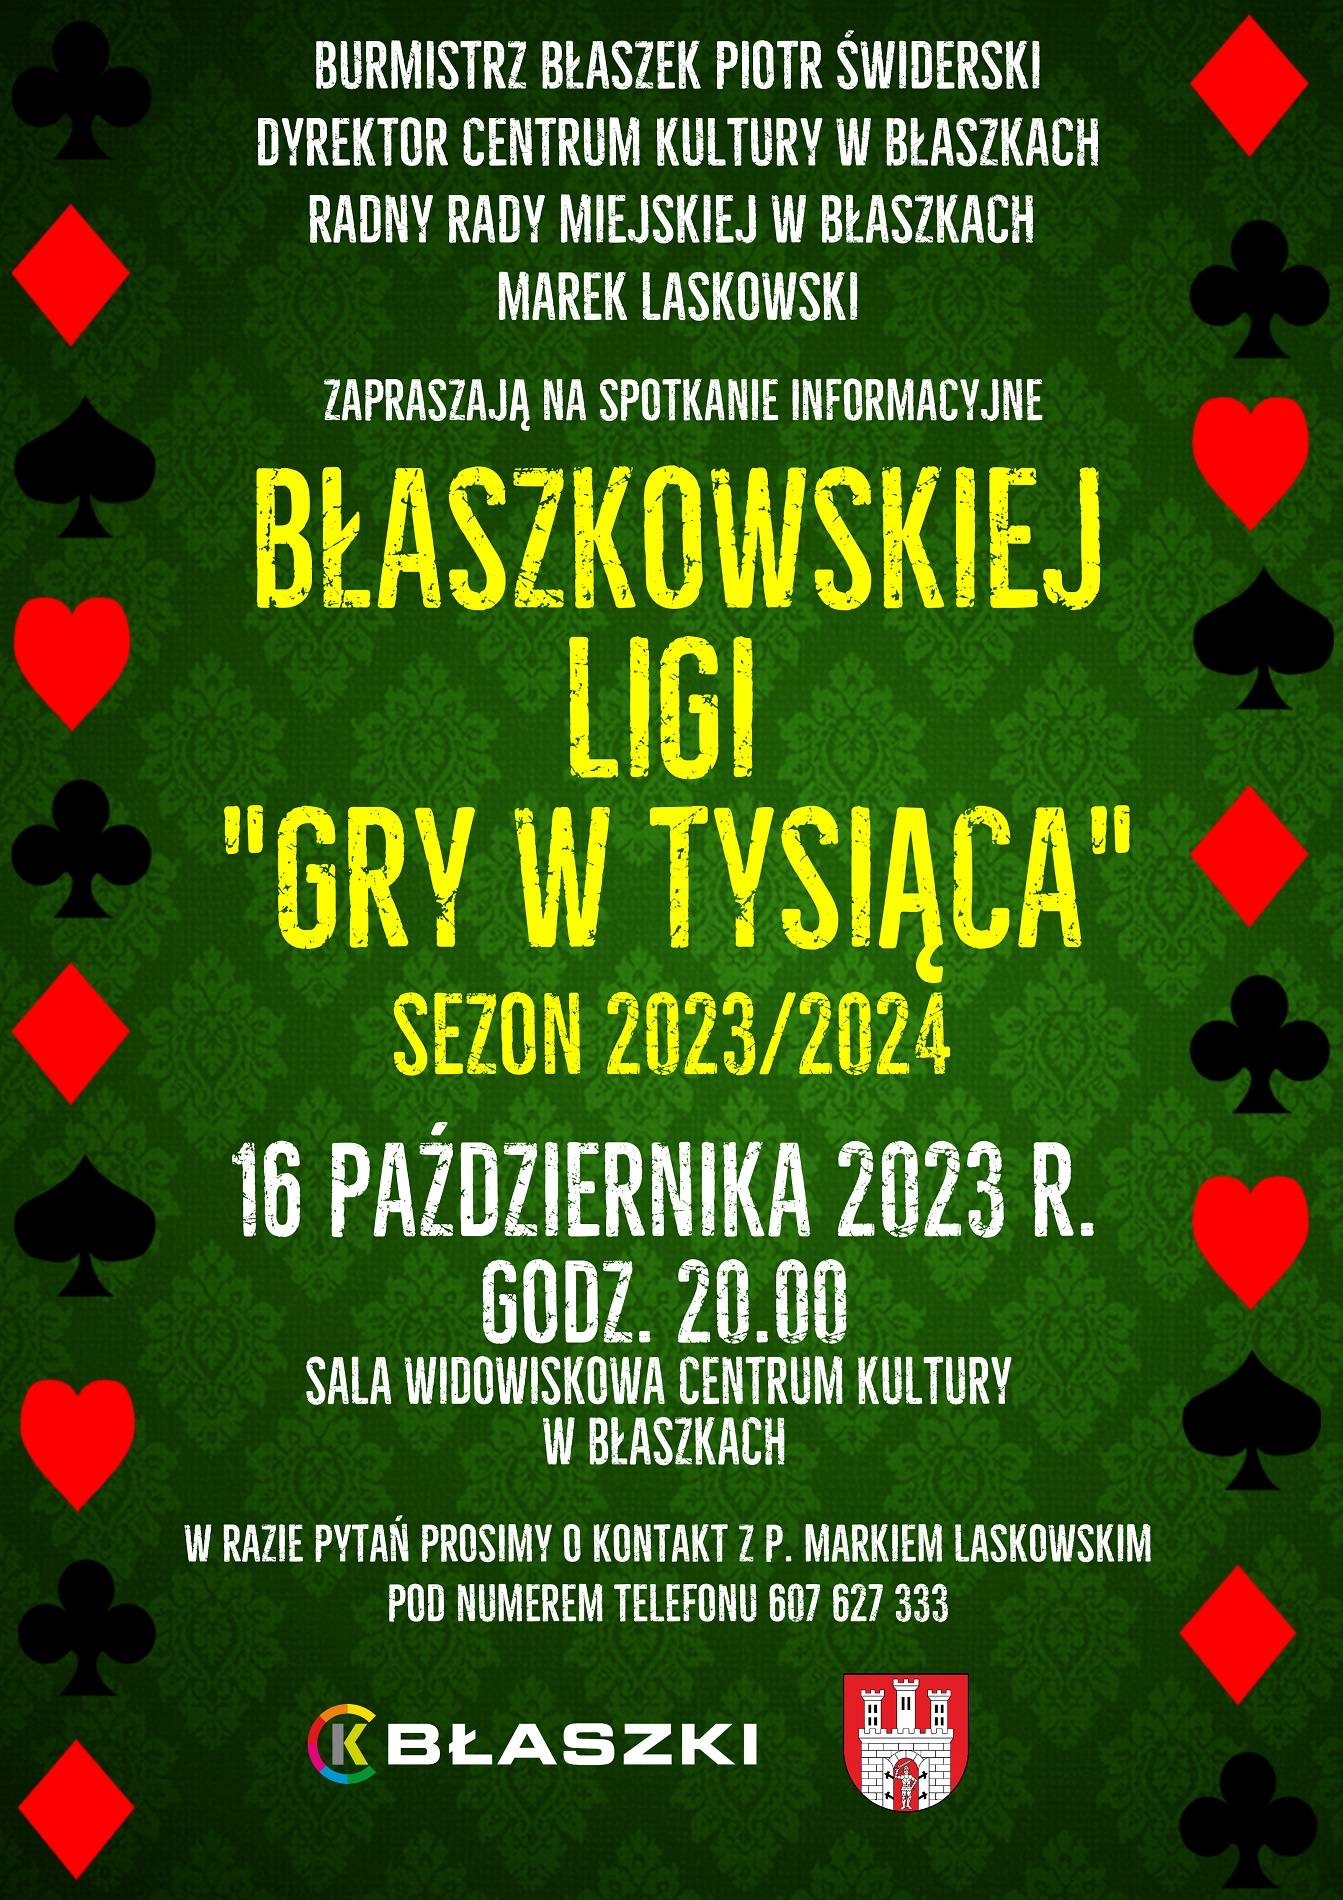 Plakat informacyjny Błaszkowskiej Ligi Gry w Tysiąca o zebraniu 16.10.2023 o godz. 20.00